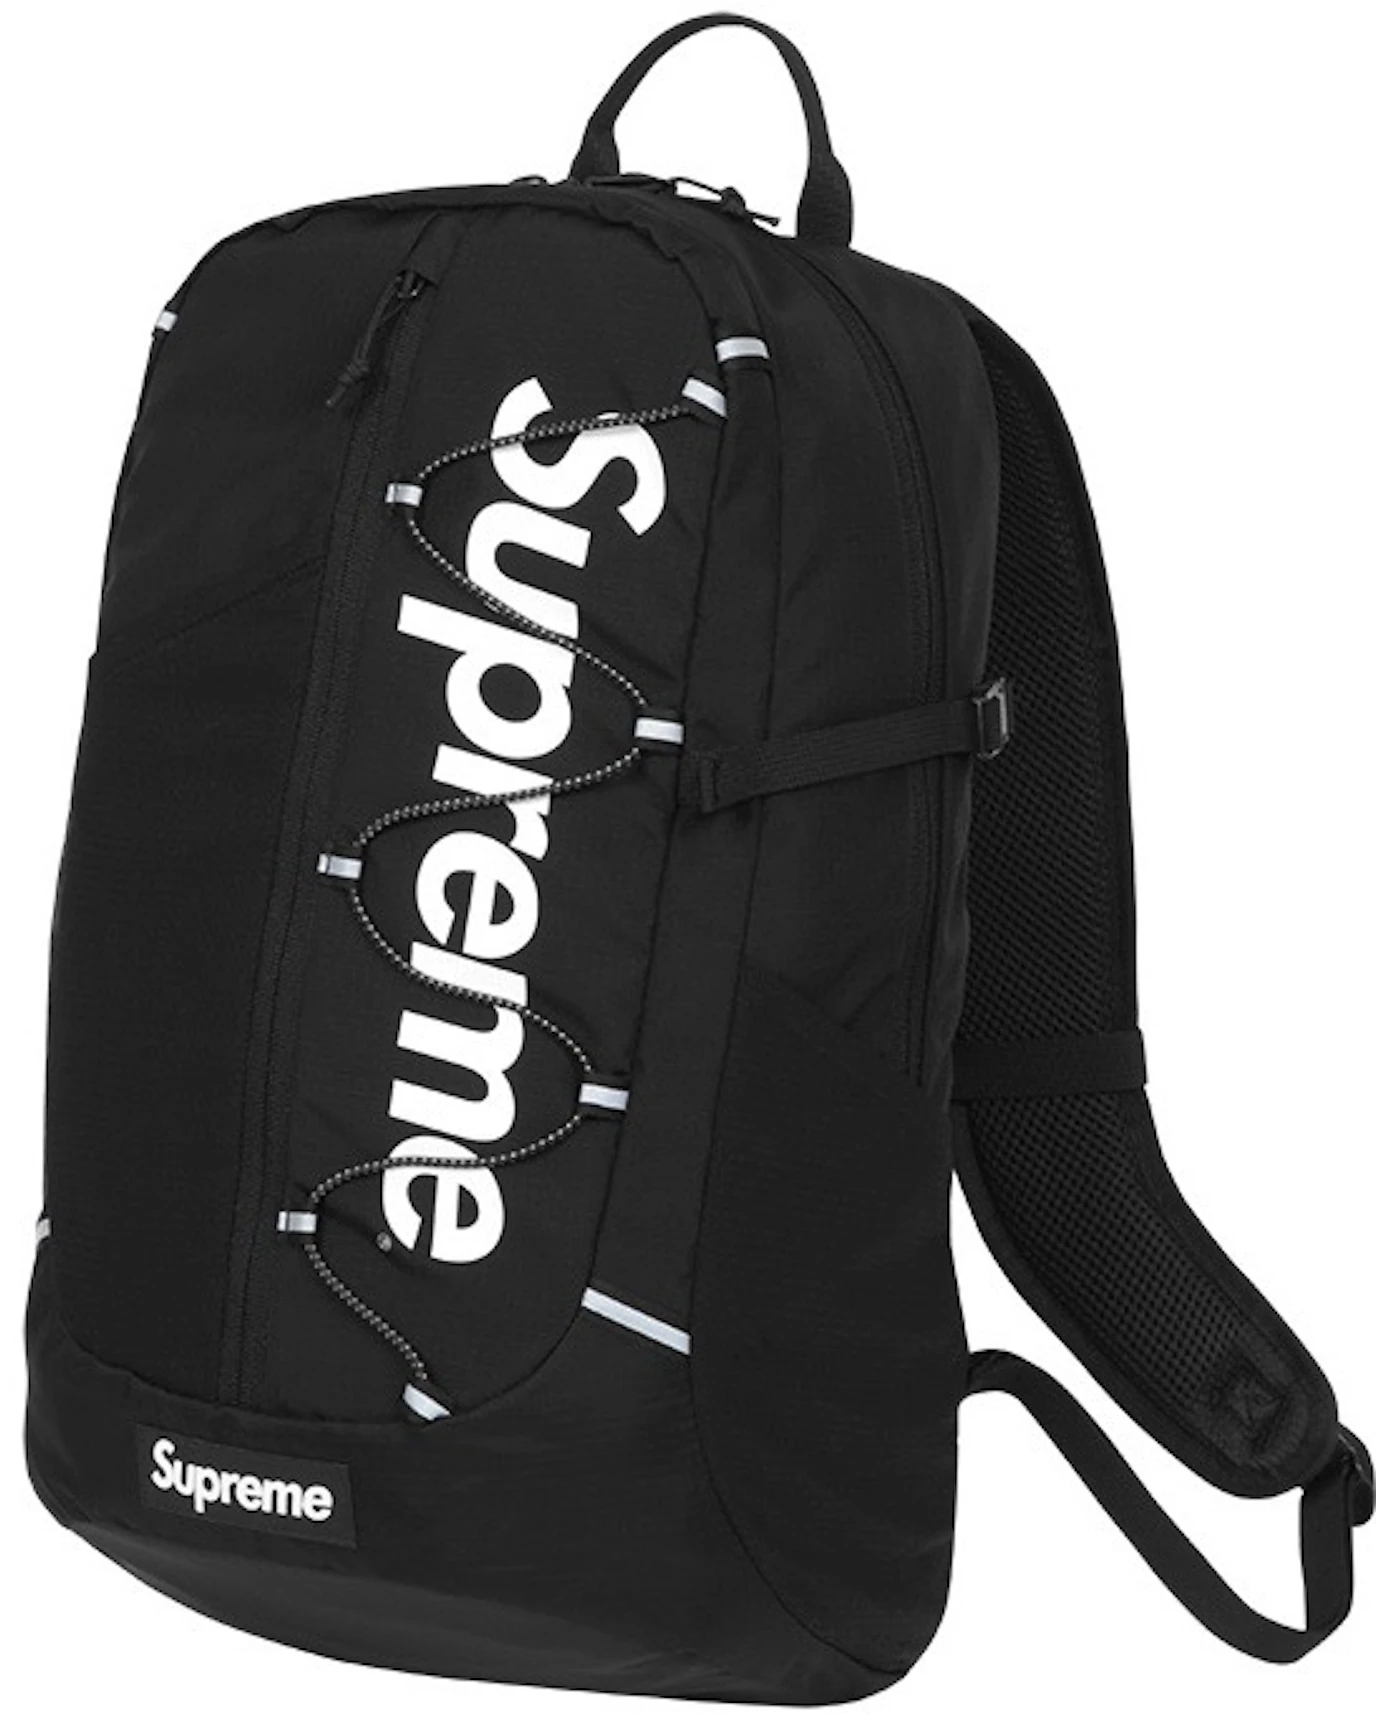 Supreme Shoulder Bag (FW18) Red - StockX News